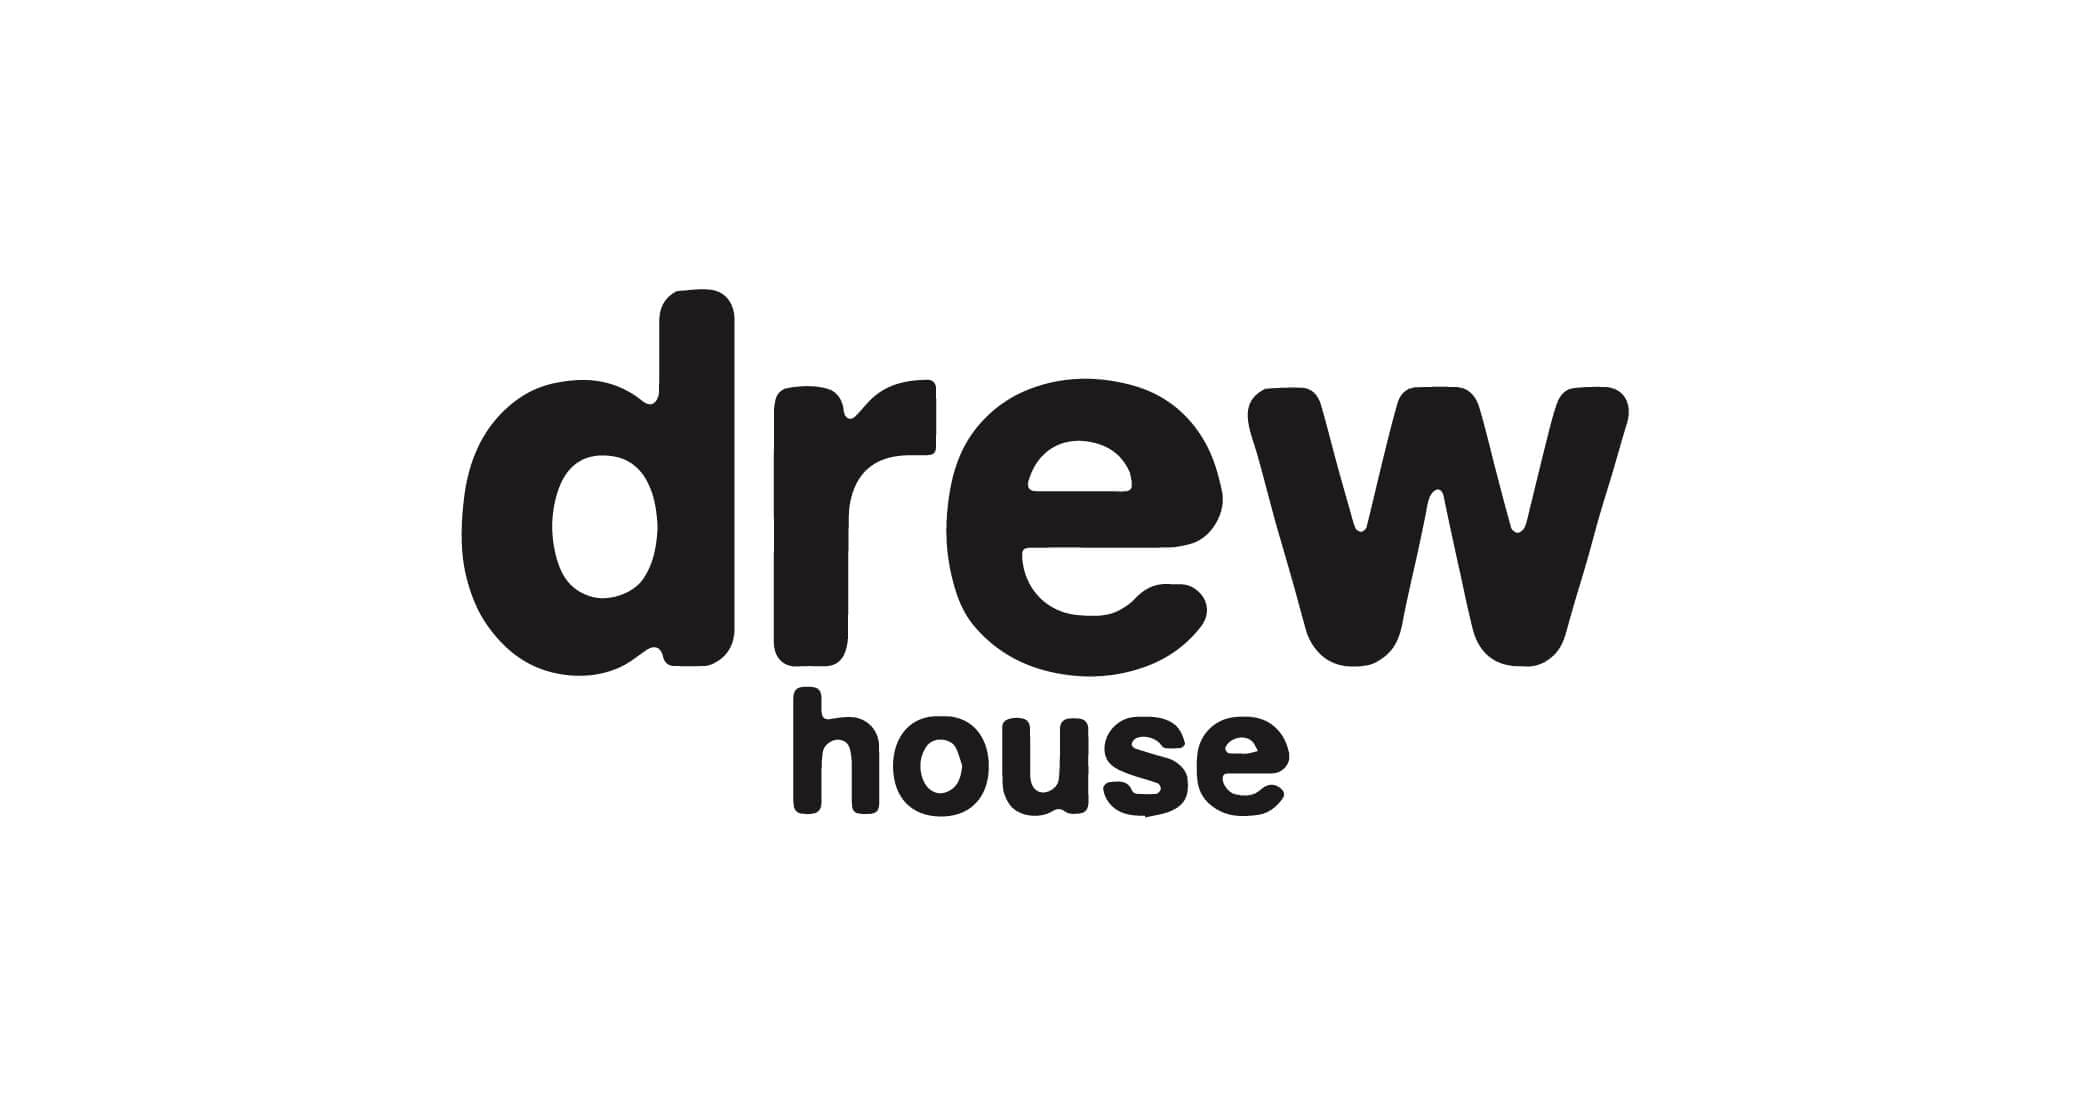 DREW HOUSE